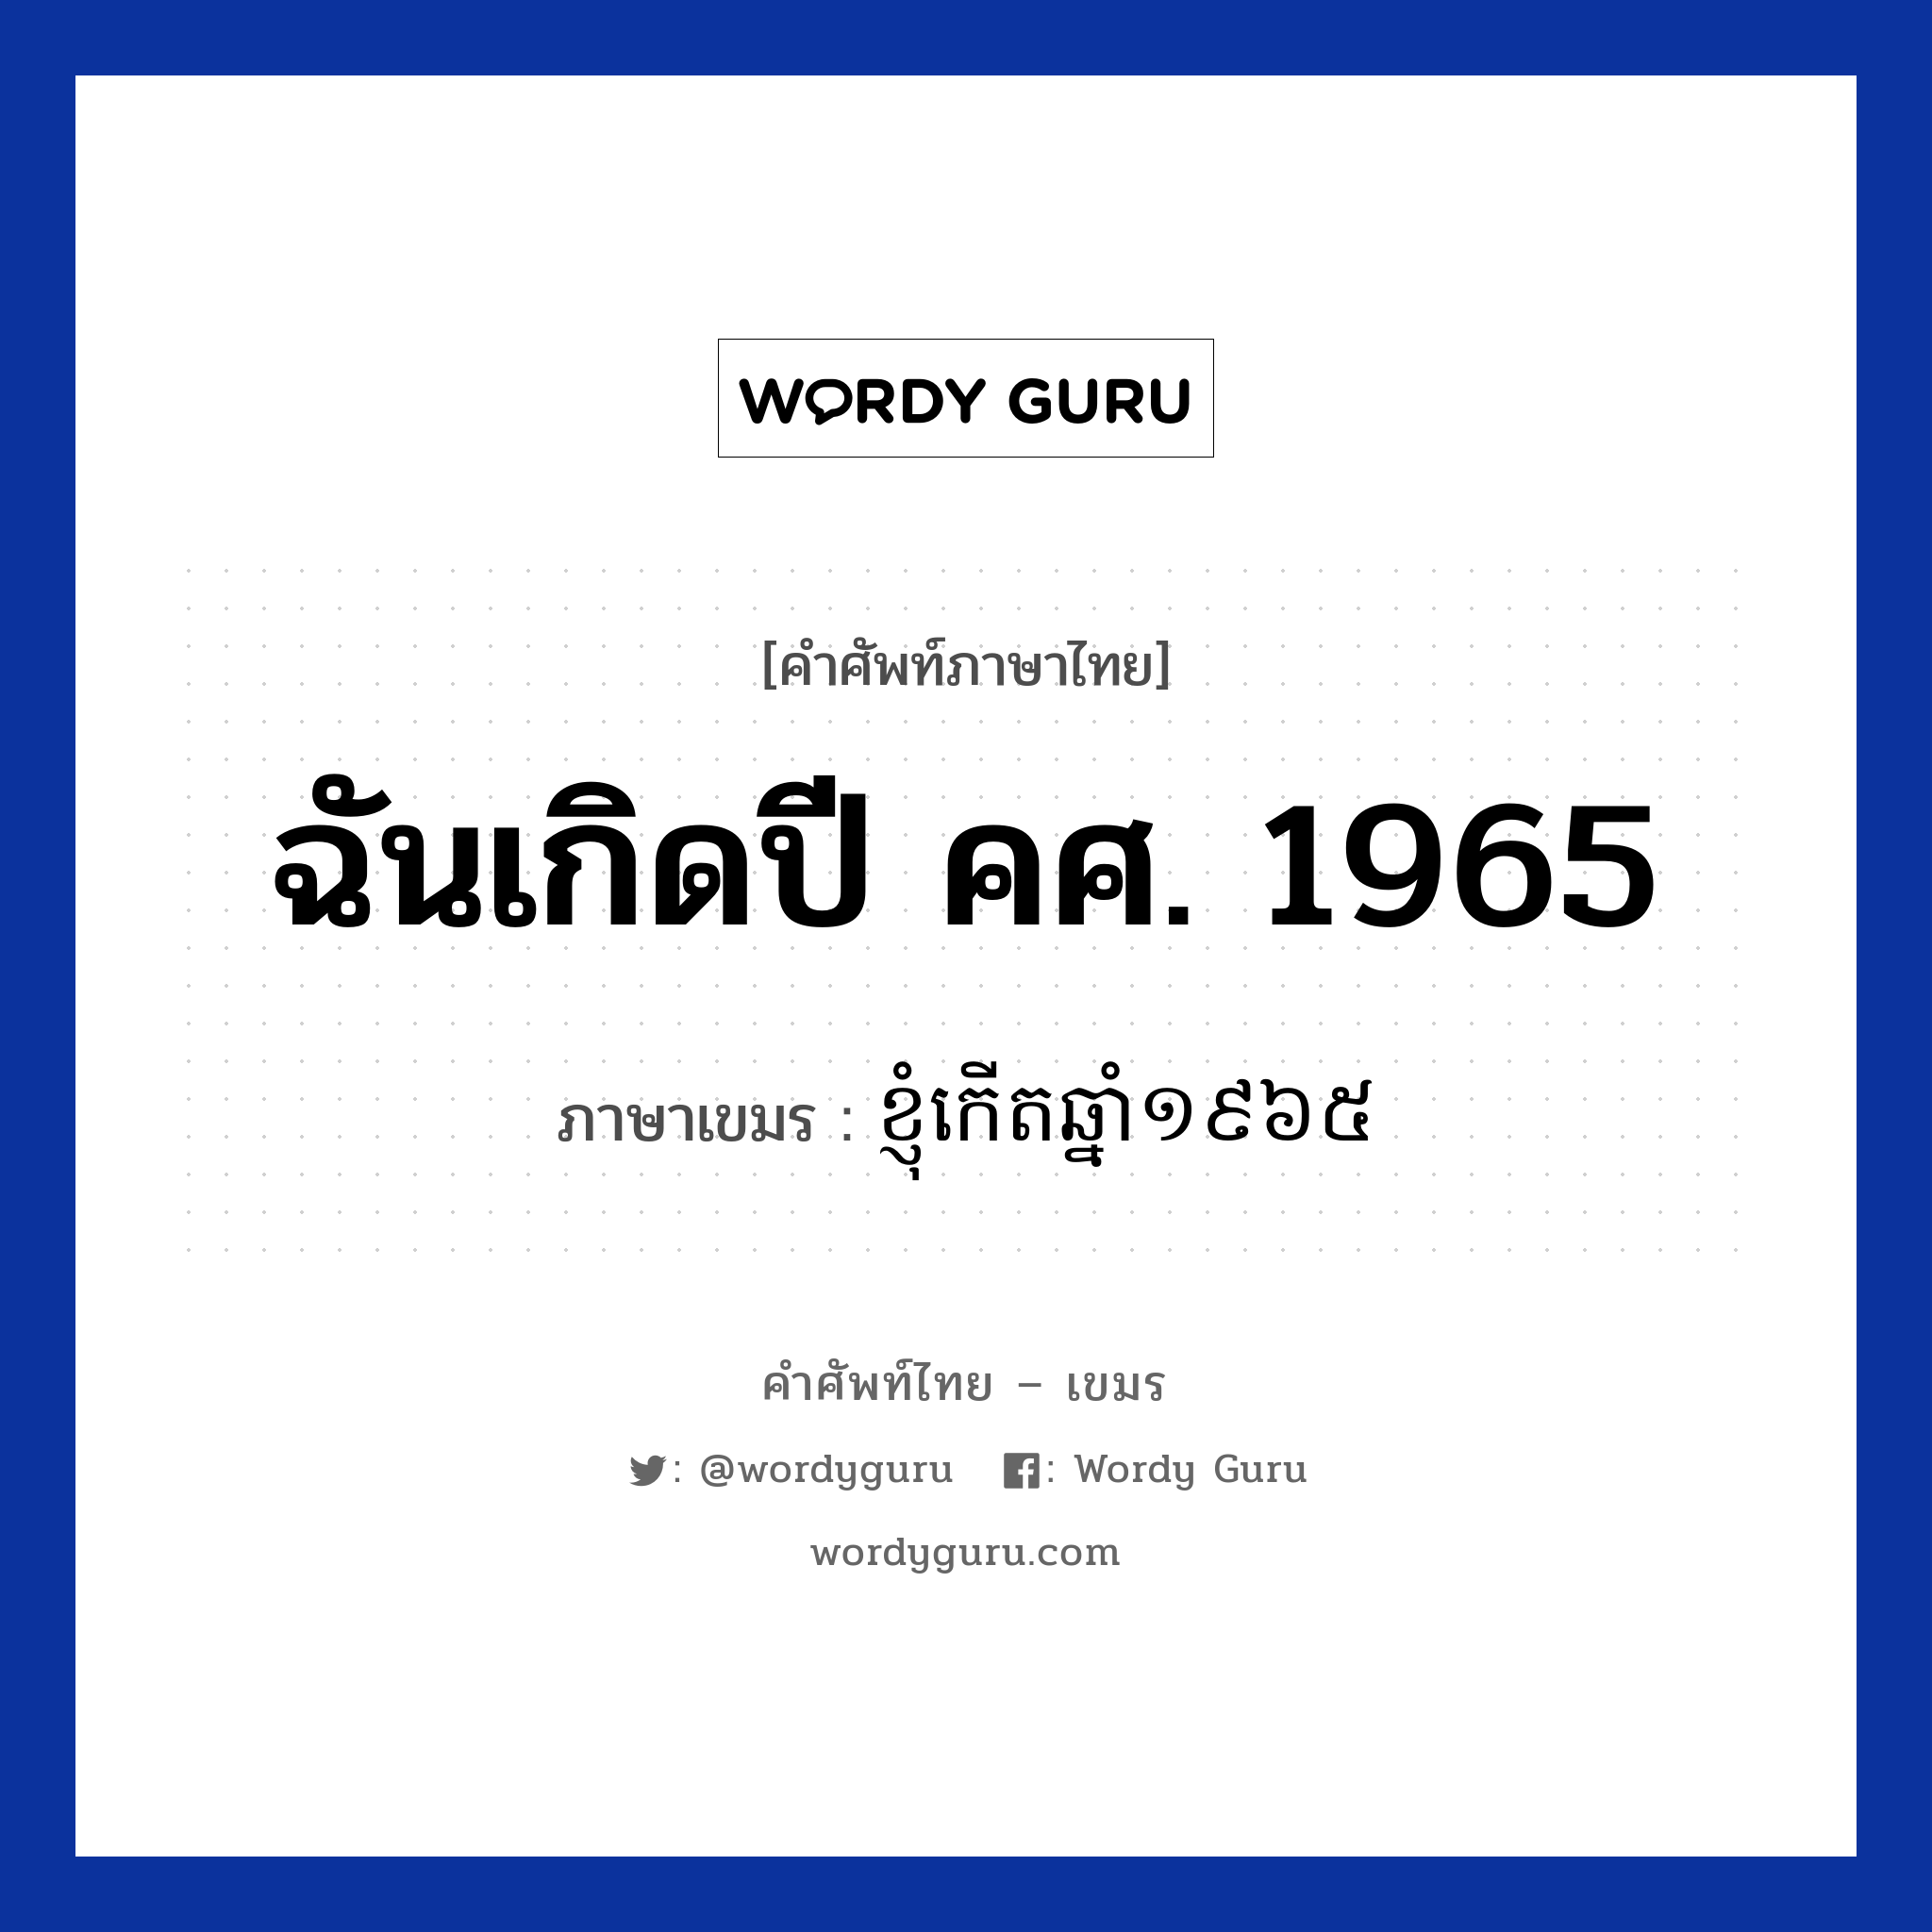 ฉันเกิดปี คศ. 1965 ภาษาเขมรคืออะไร, คำศัพท์ภาษาไทย - เขมร ฉันเกิดปี คศ. 1965 ภาษาเขมร ខ្ញុំកេីតឆ្នាំ​​១៩៦៥ หมวด บทสนทนาเกี่ยวกับวัน เวลา Knhom kert chnam mouy poun pramboun roy hoksibpram หมวด บทสนทนาเกี่ยวกับวัน เวลา